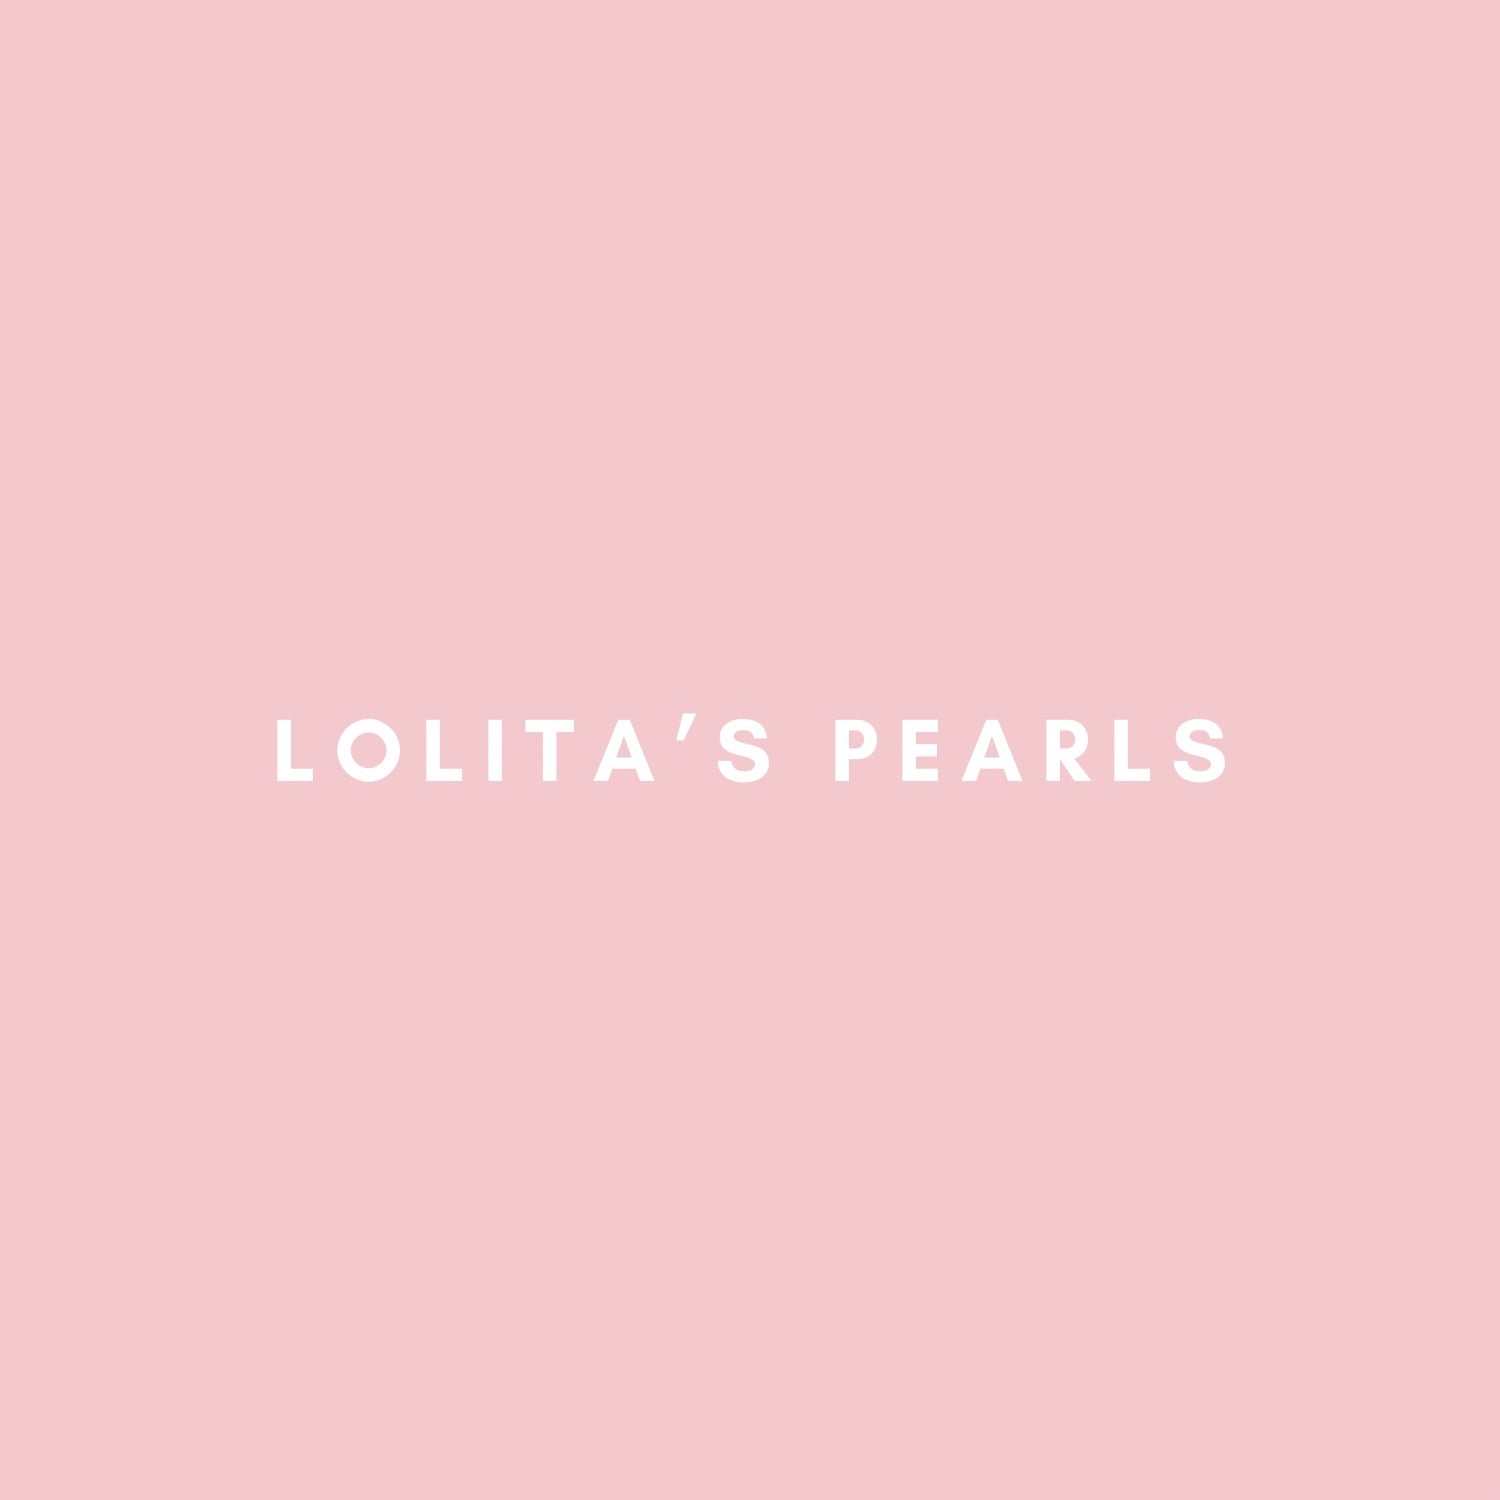 Lolita’s Pearls